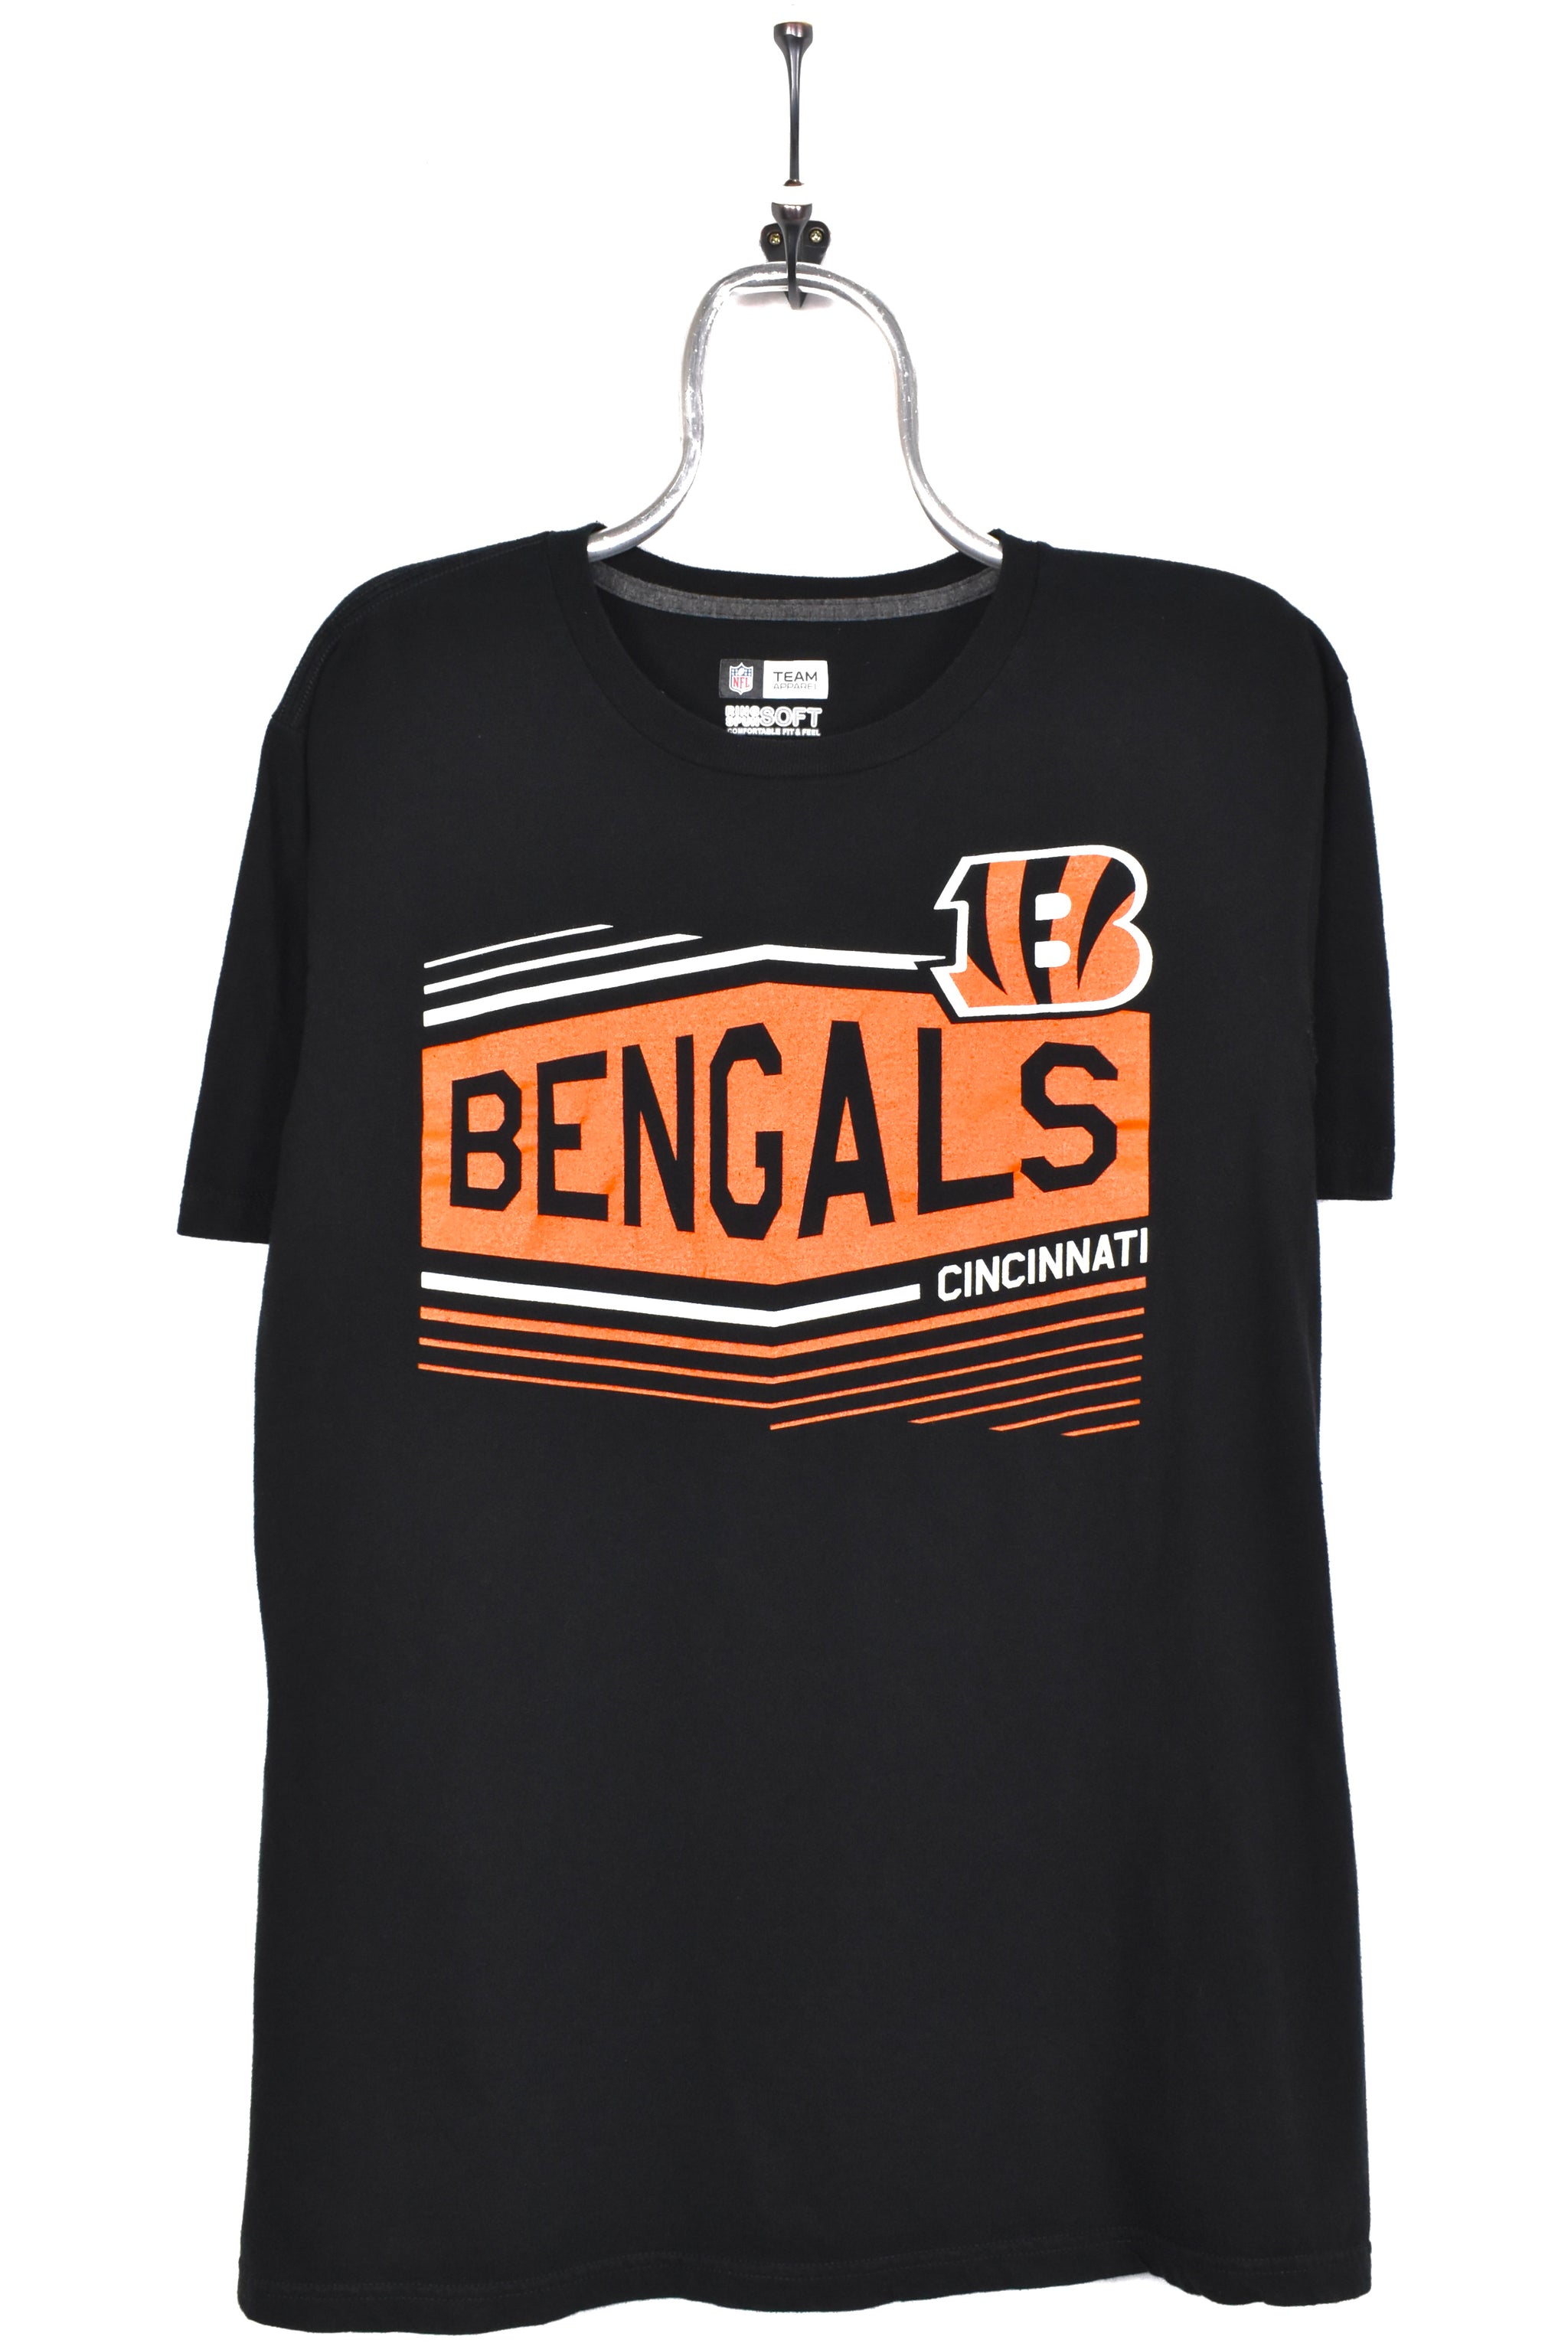 T-shirt Nfl Cincinnati Bengals